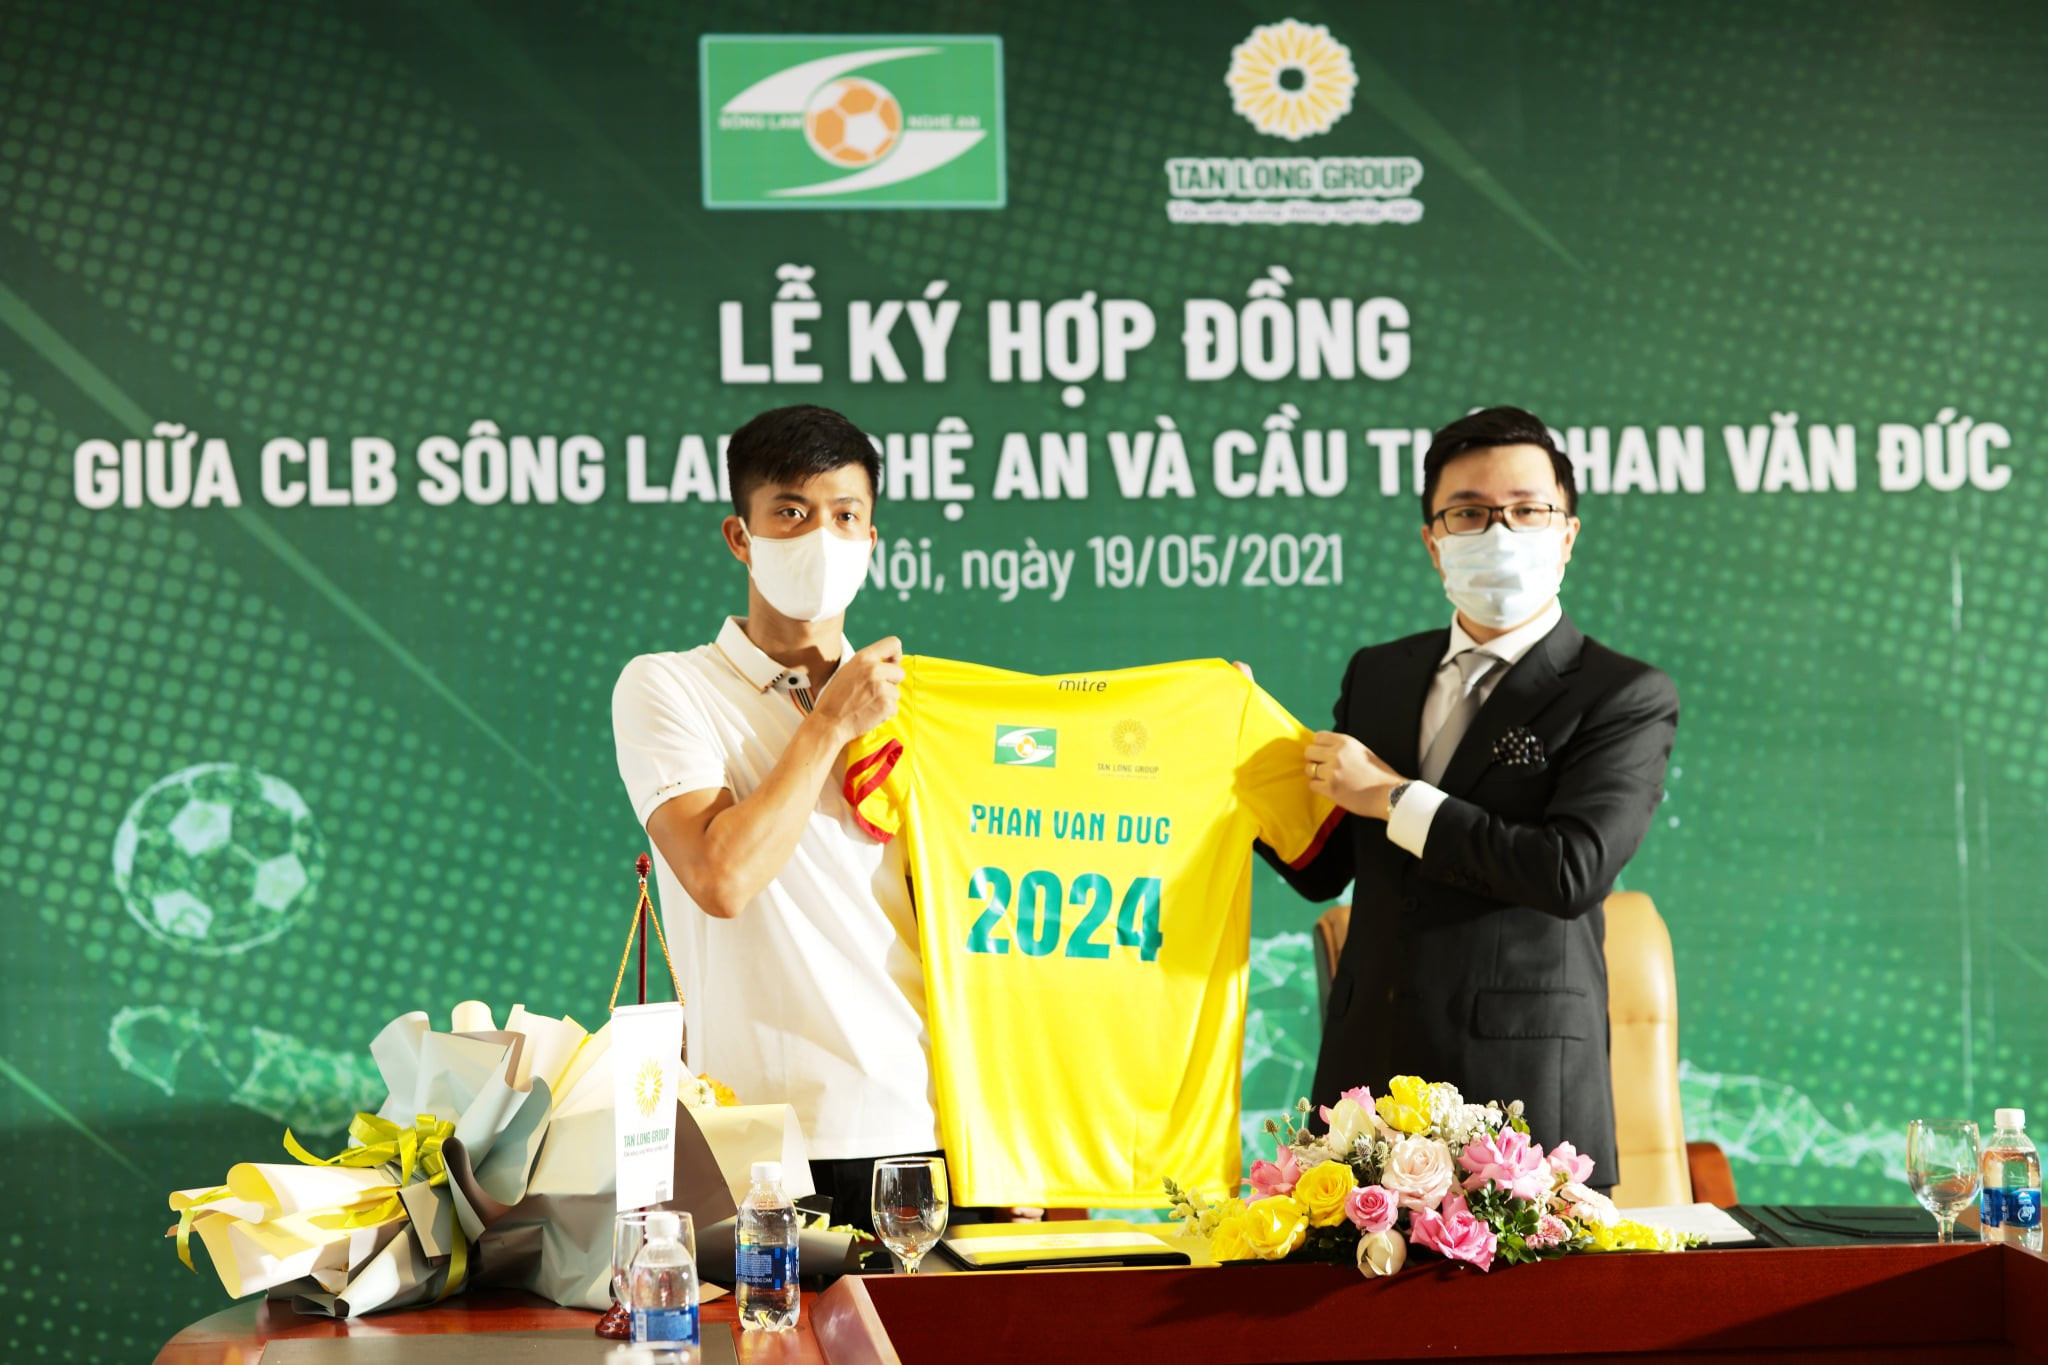 SLNA đã níu chân Phan Văn Đức thành công. Ảnh: SLNA FC